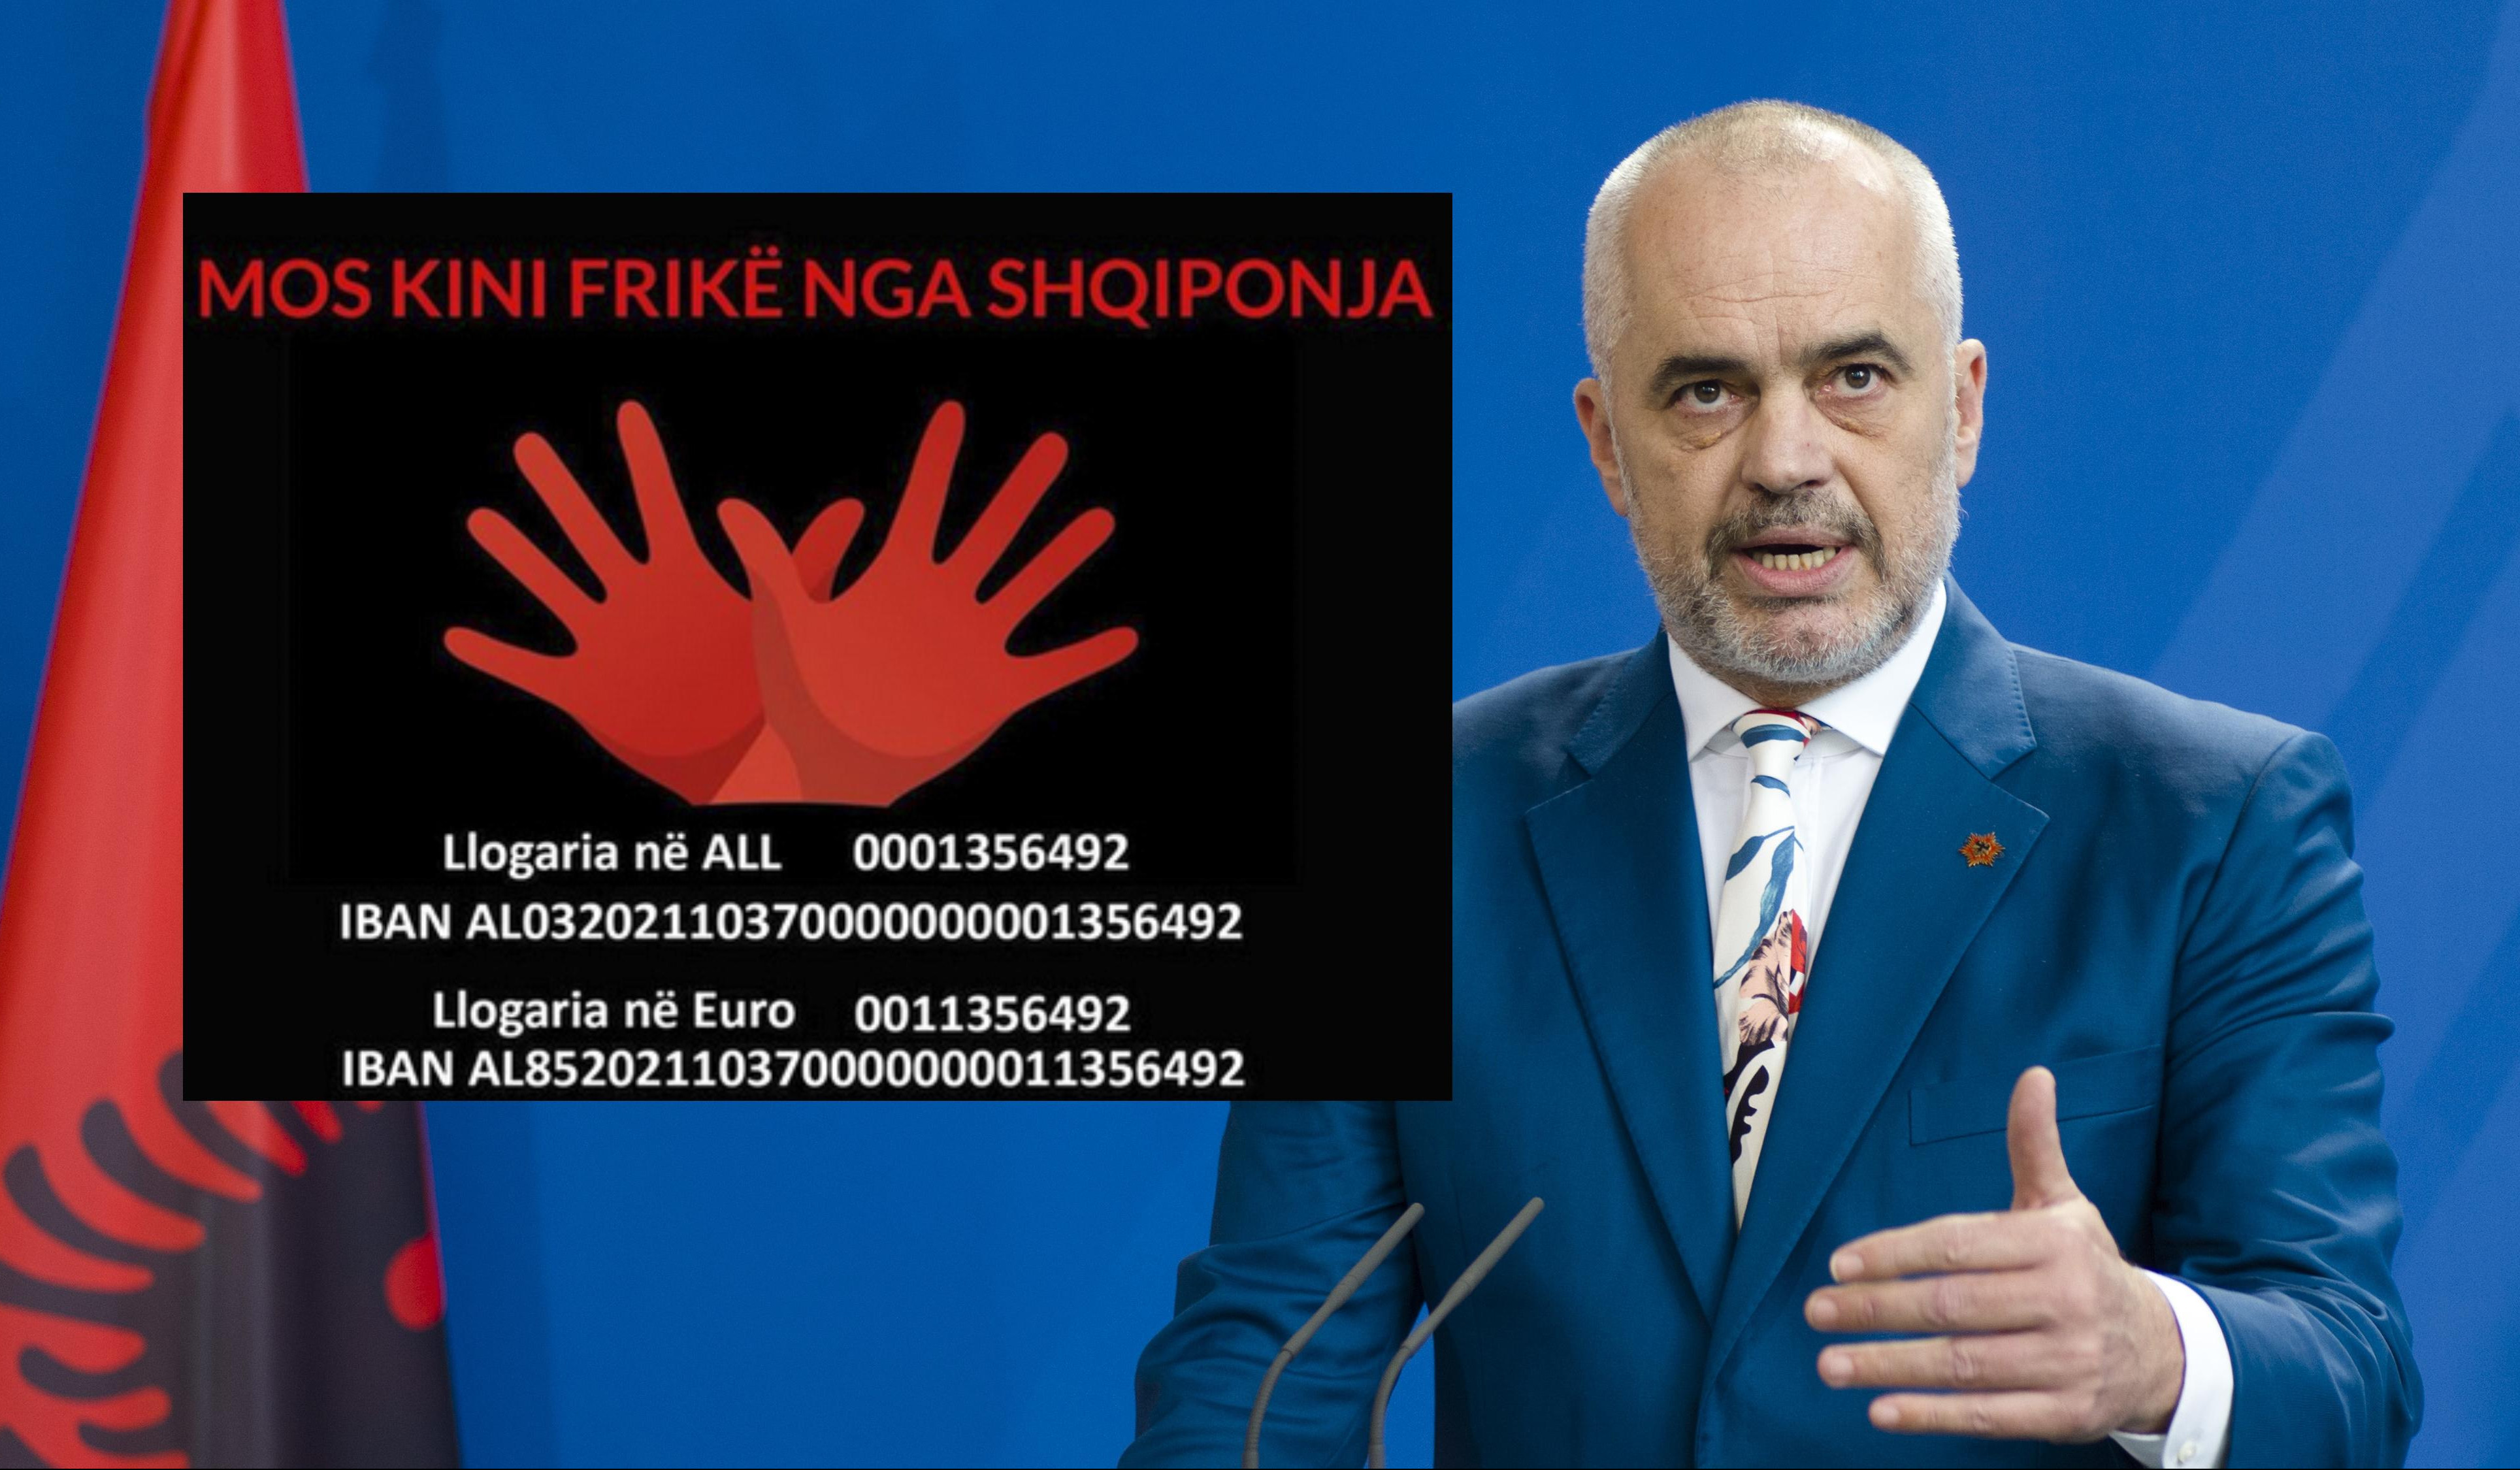 RAMA PROVOCIRA SRBIJU! PRIZNAJTE KOSOVO RADI MIRA NA BALKANU: Premijer Albanije opet sanja o našoj pokrajini!